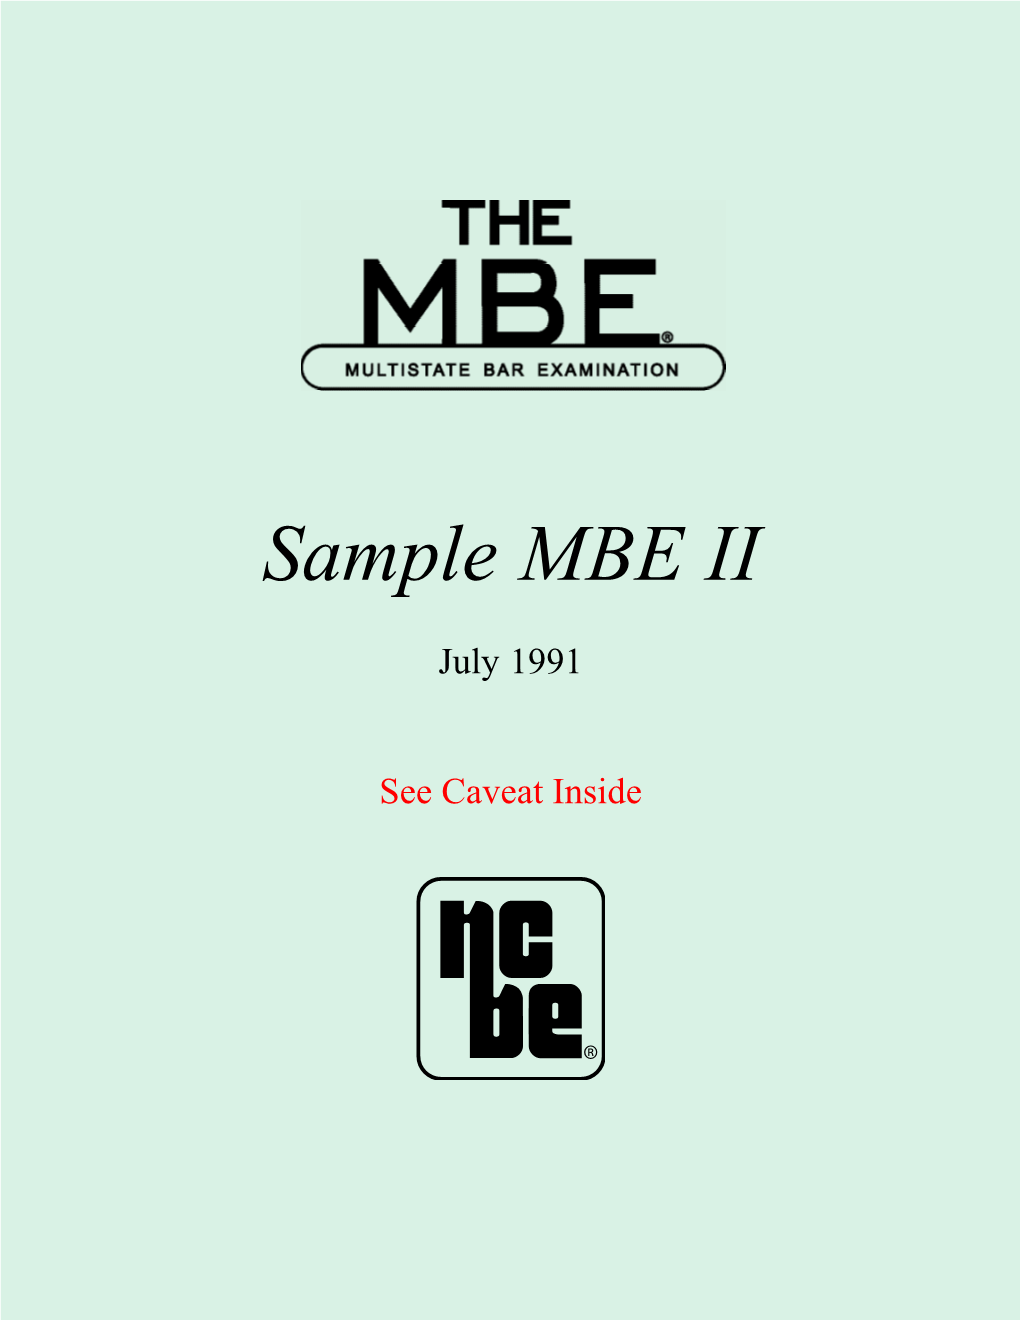 Sample MBE II, July 1991